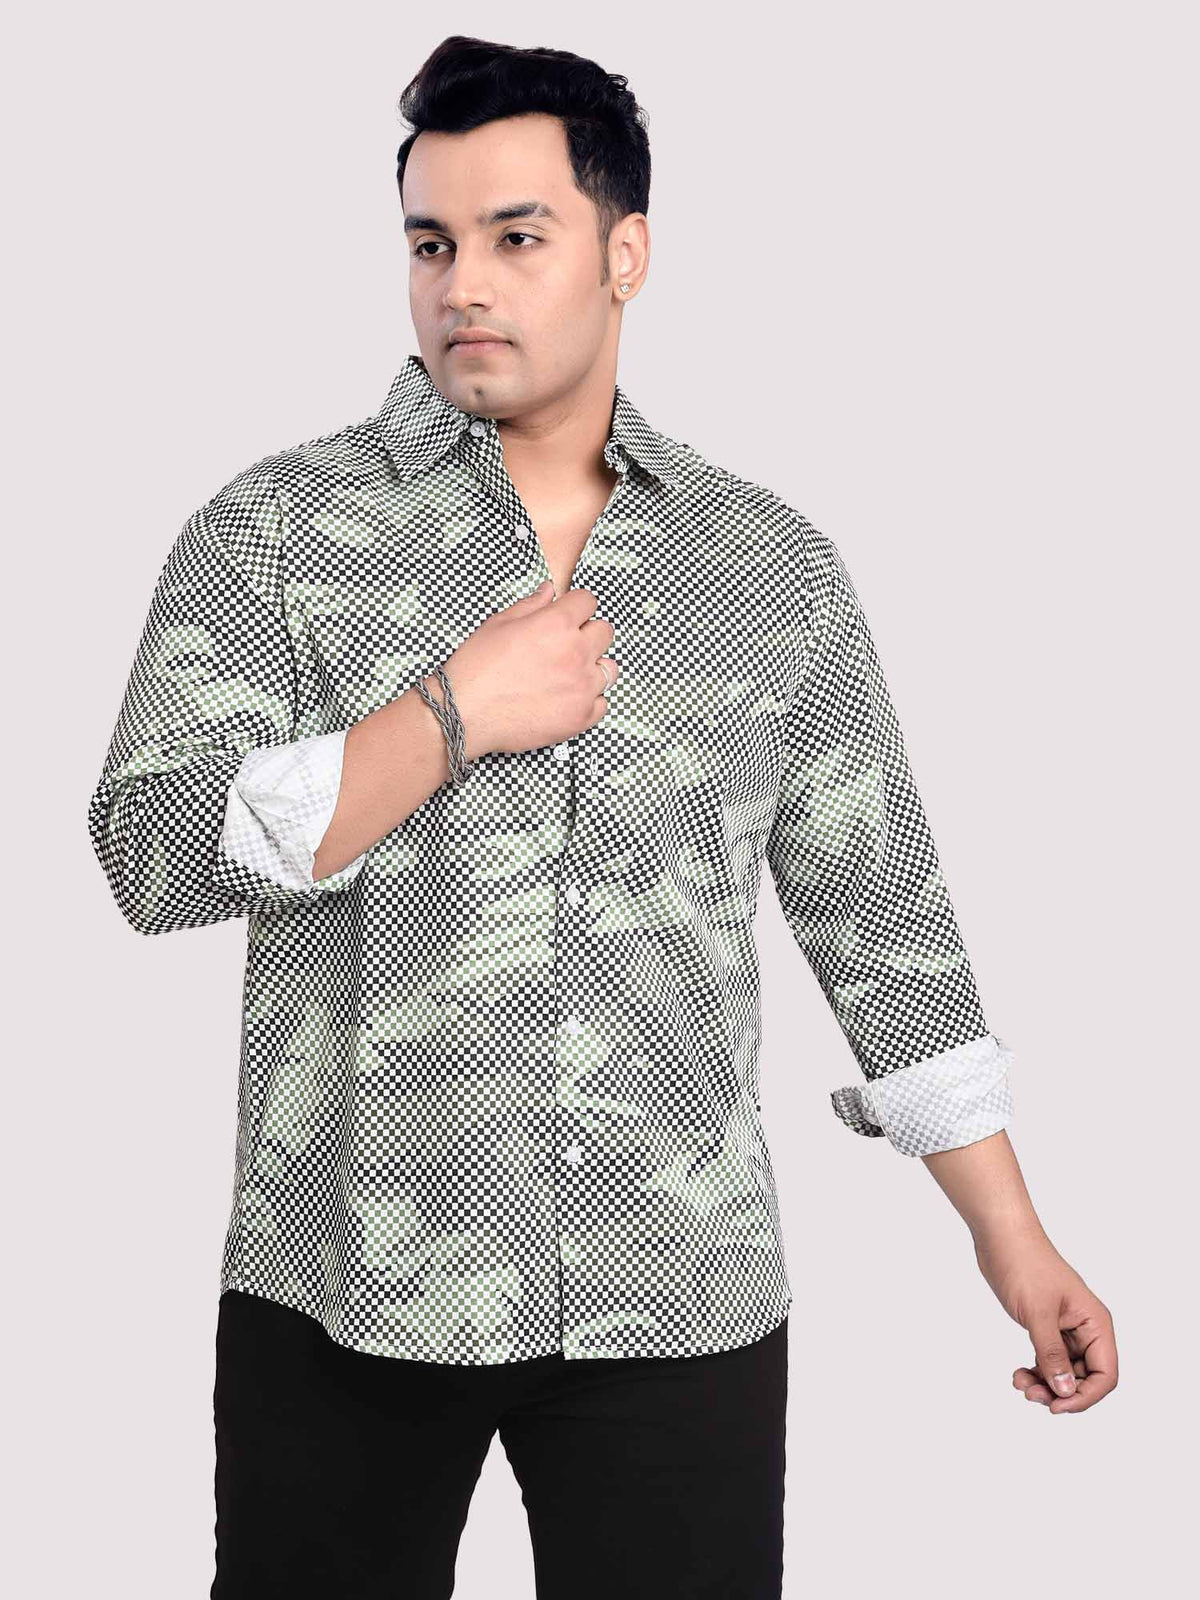 Matrix PrintedÃ‚Â Digital Printed Shirt Men's Plus Size